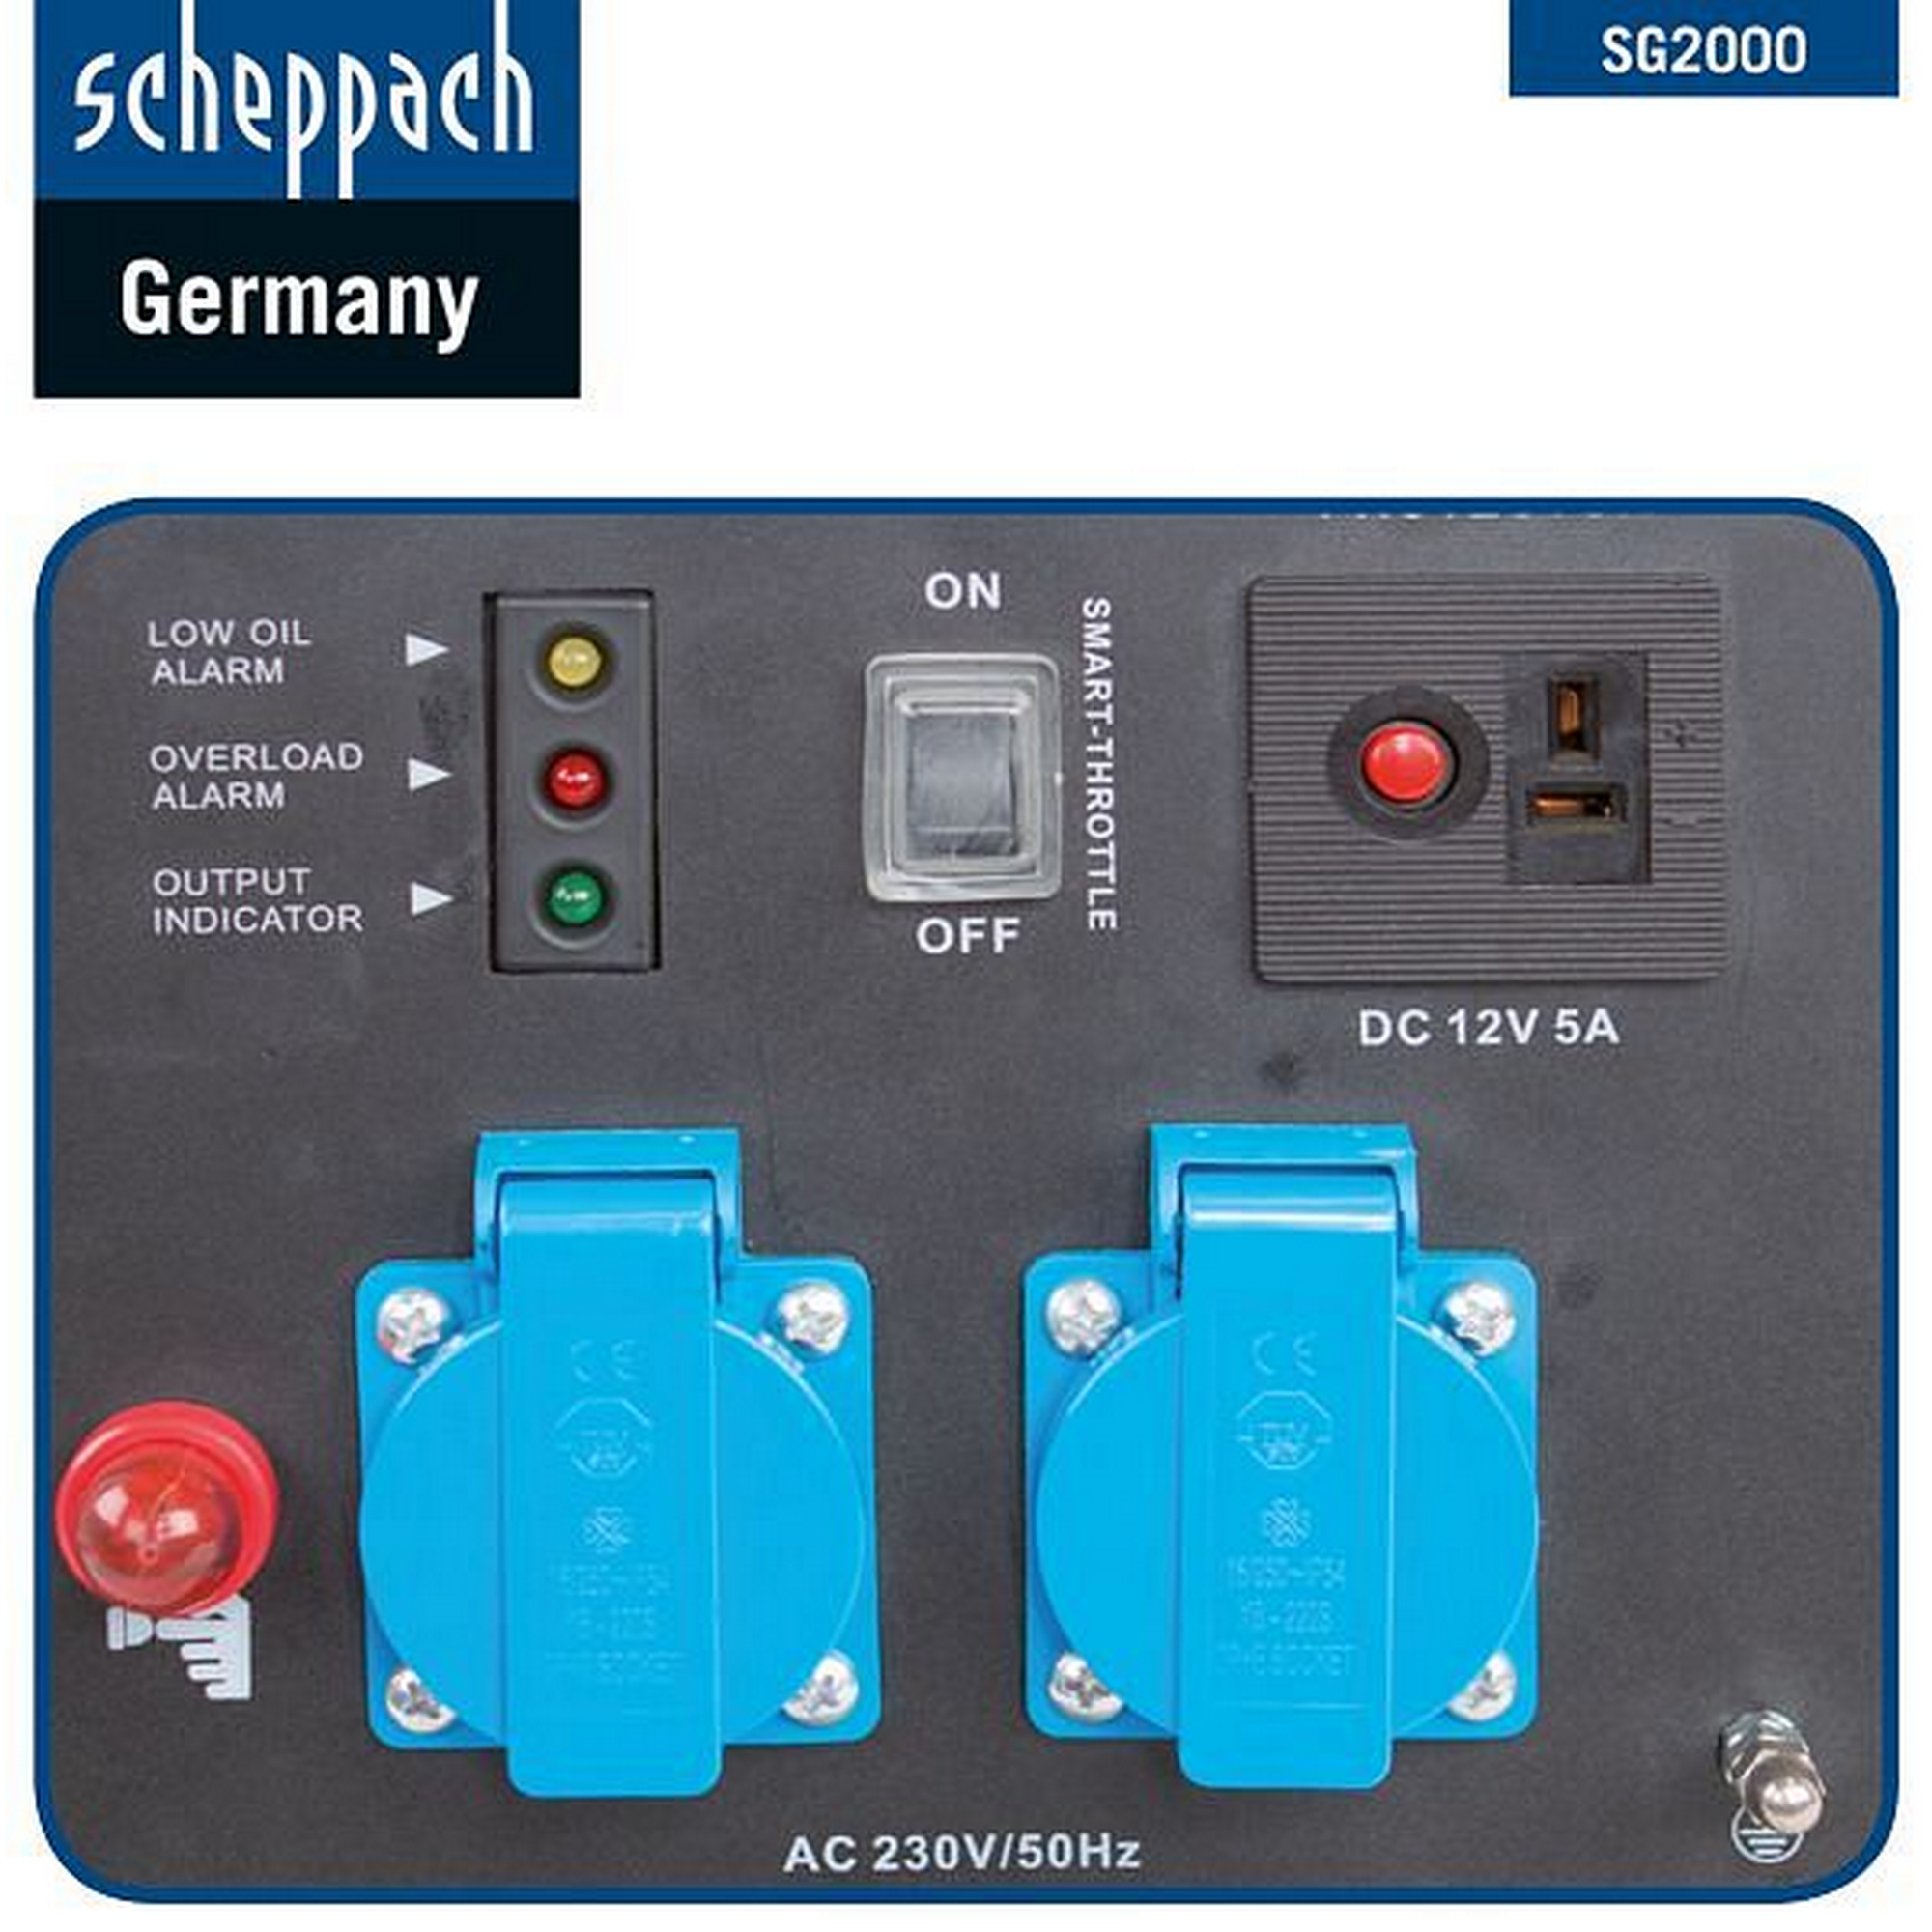 Scheppach Stromgenerator IGT 2500 Angebot bei toom Baumarkt